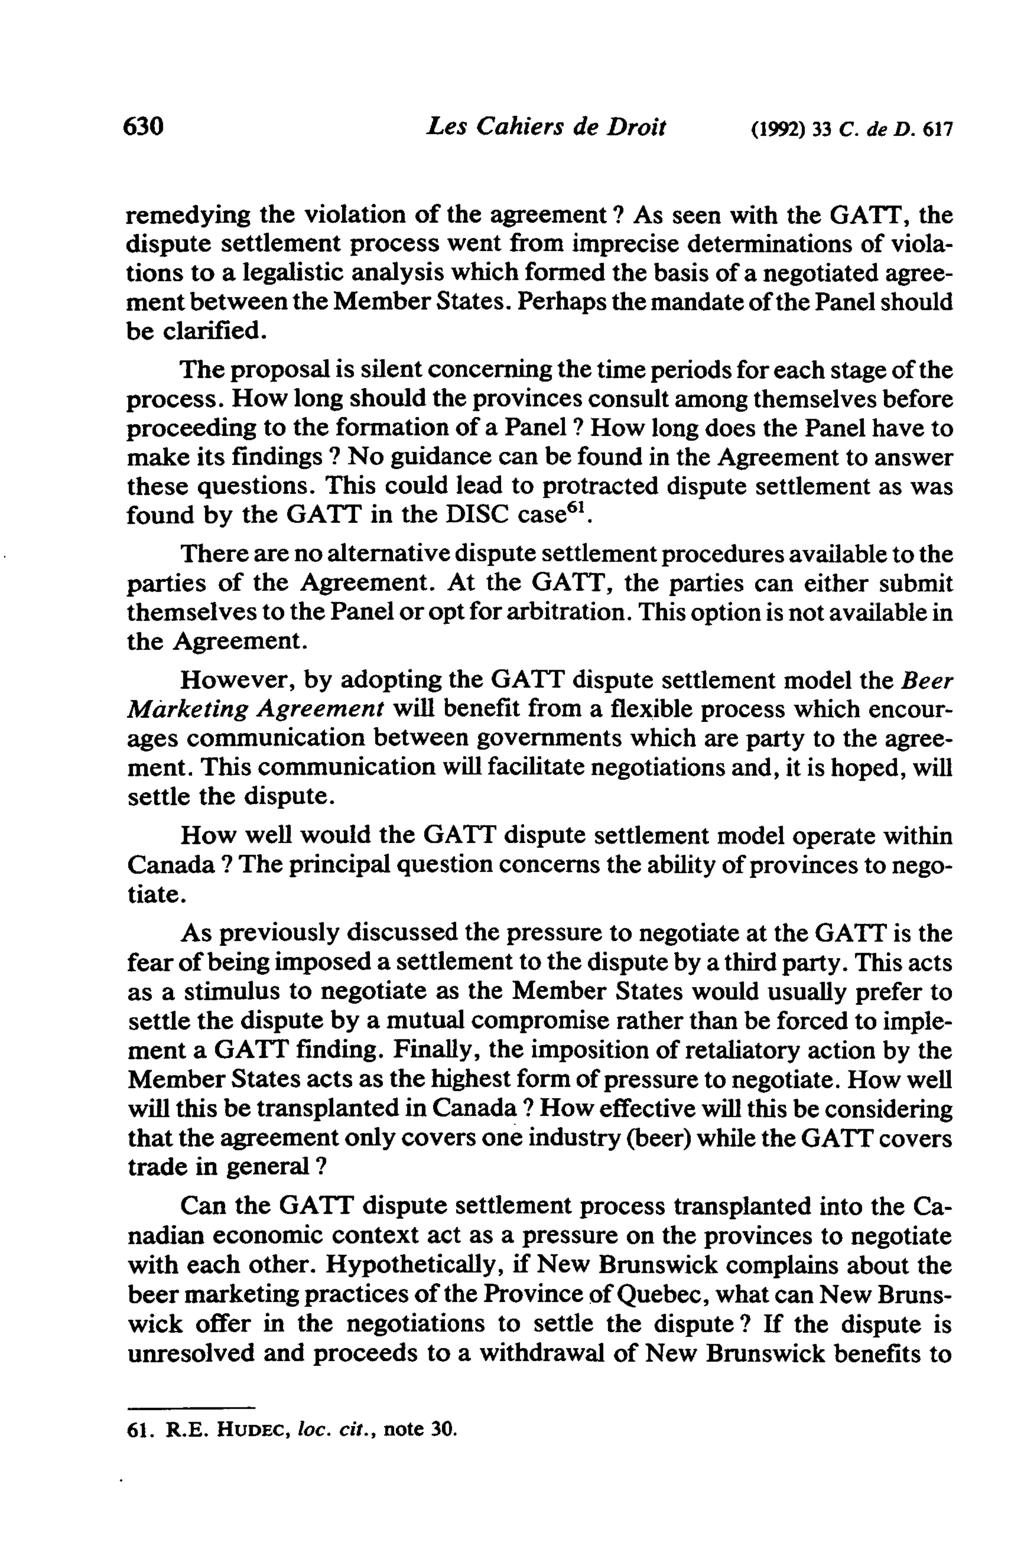 630 Les Cahiers de Droit (1992) 33 C. de D. 617 remedying the violation of the agreement?